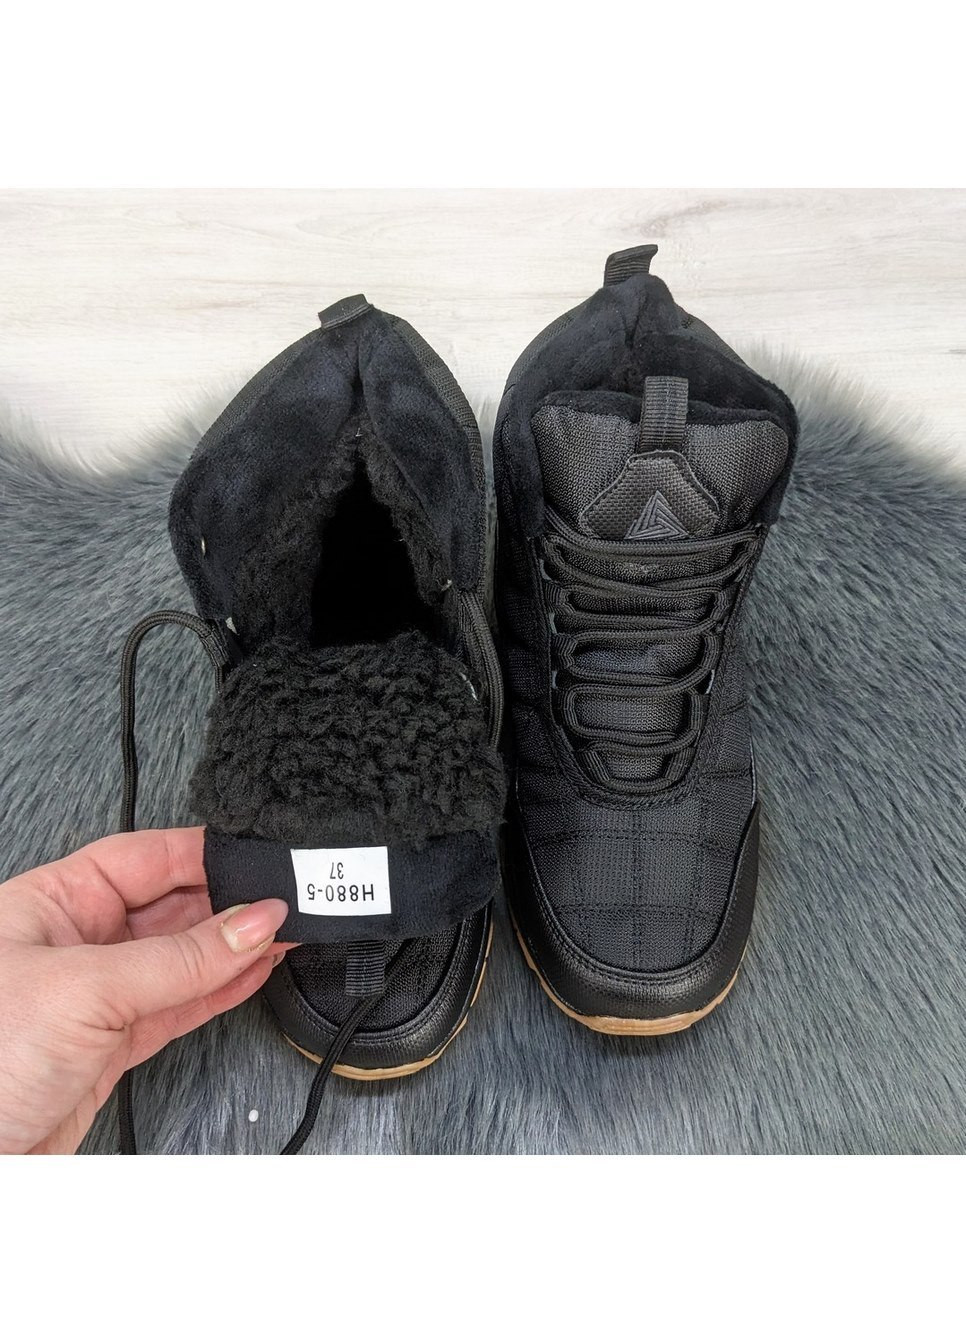 Черные повседневные зимние ботинки зимние для мальчика подростковые Stilli